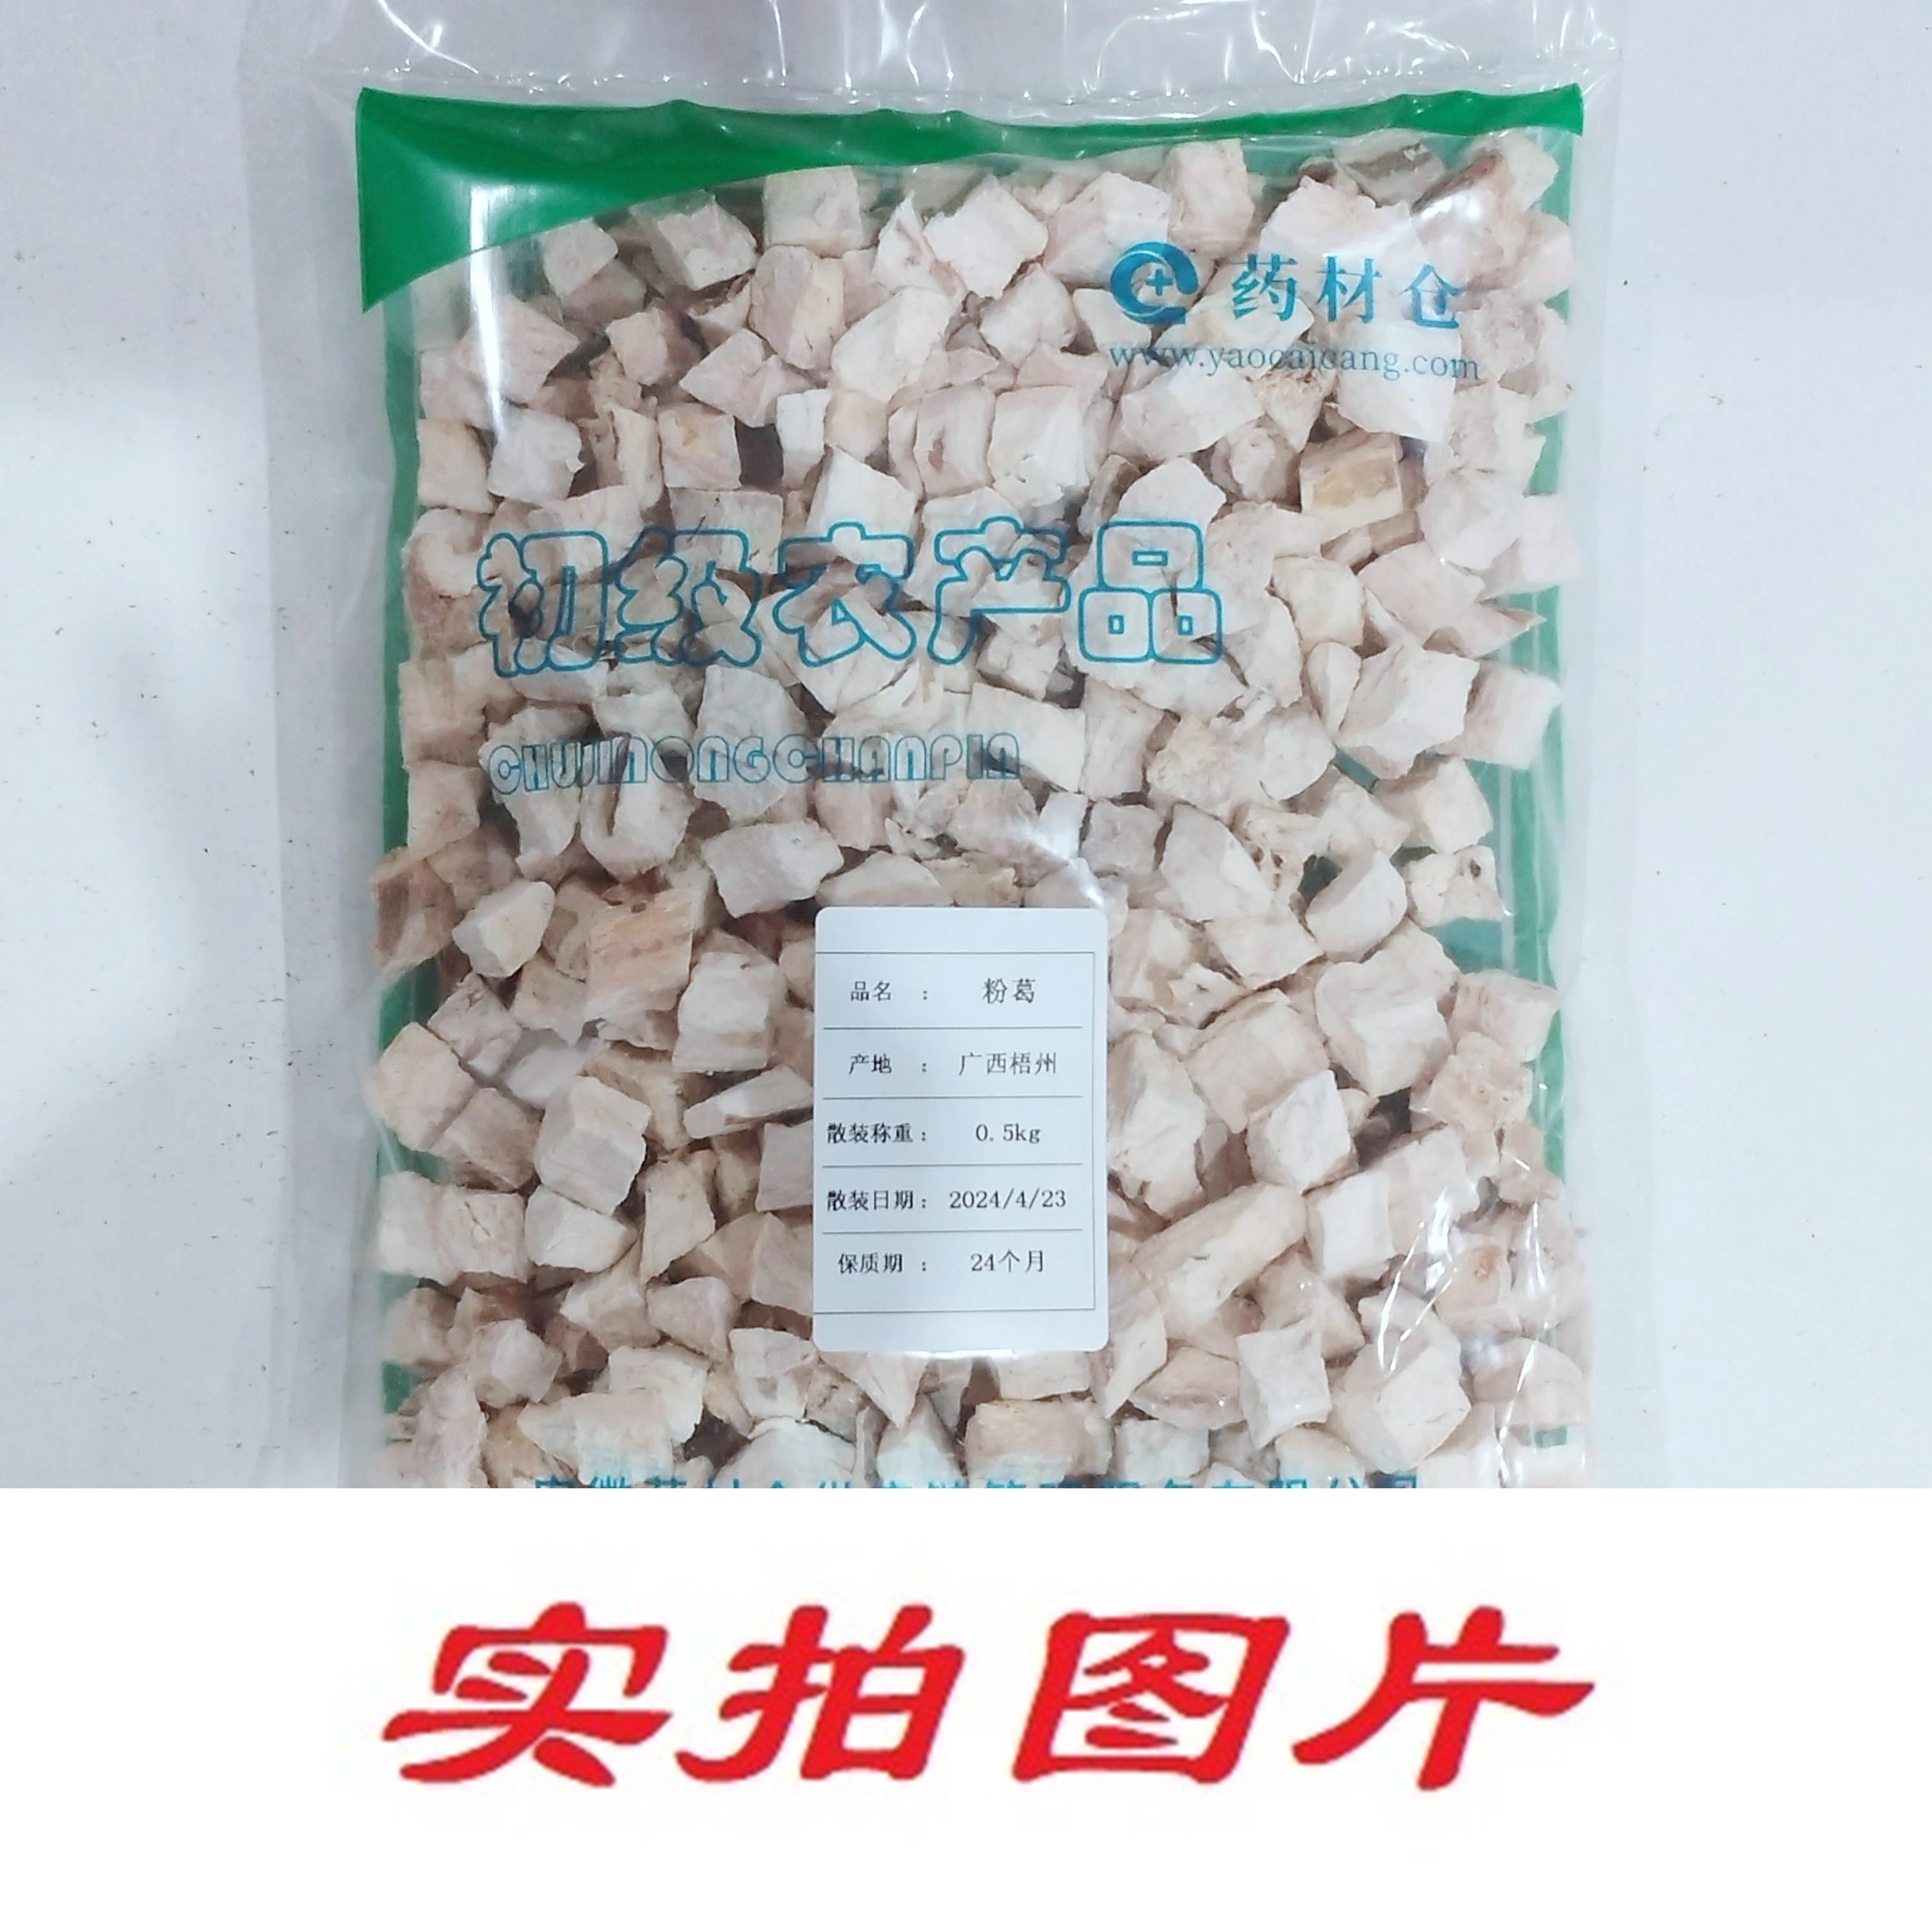 【】粉葛0.5kg-农副产品